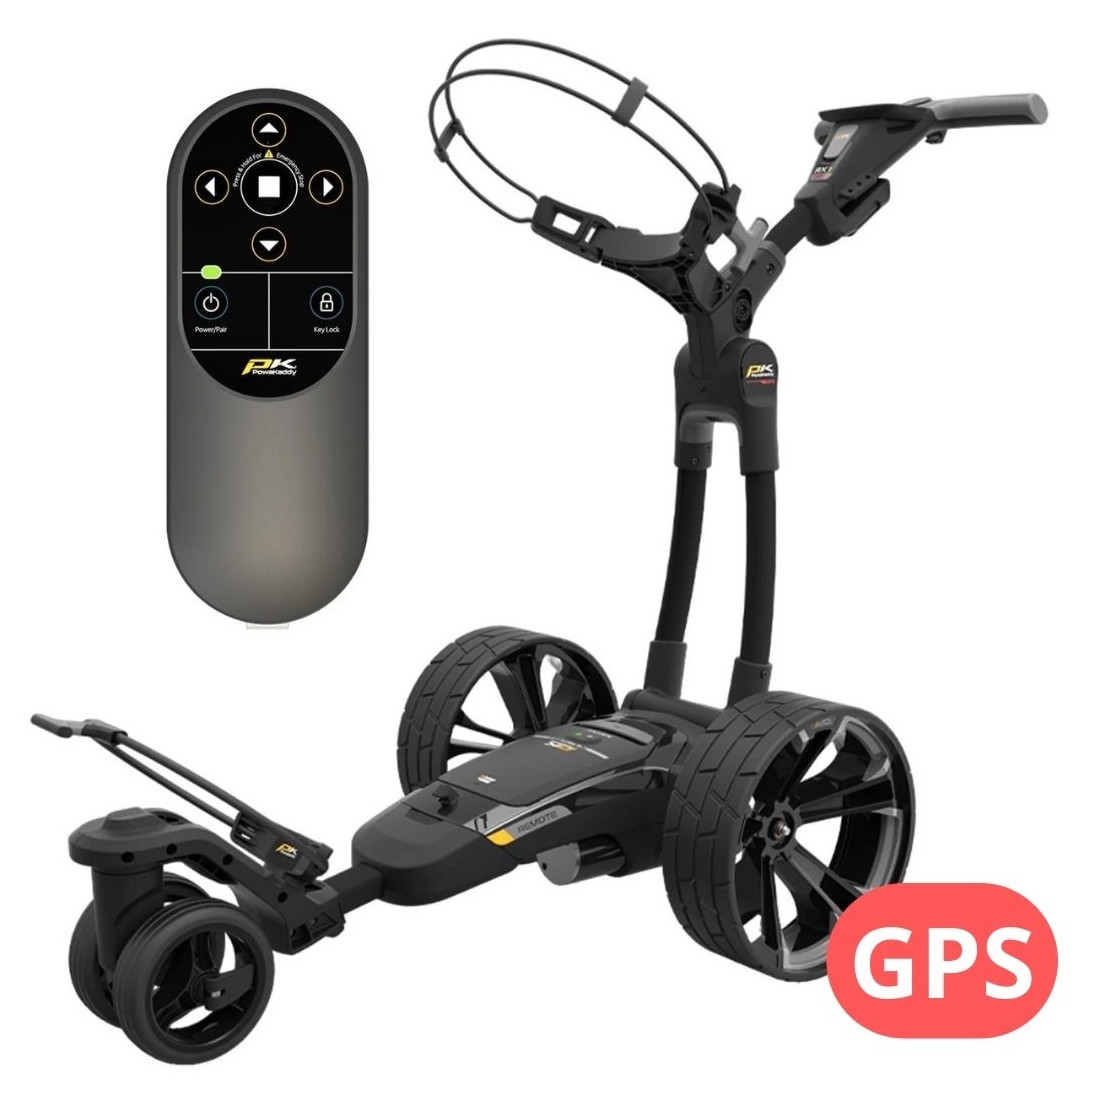 Powakaddy Chariot électrique RX1 Remote XL Plus GPS 1